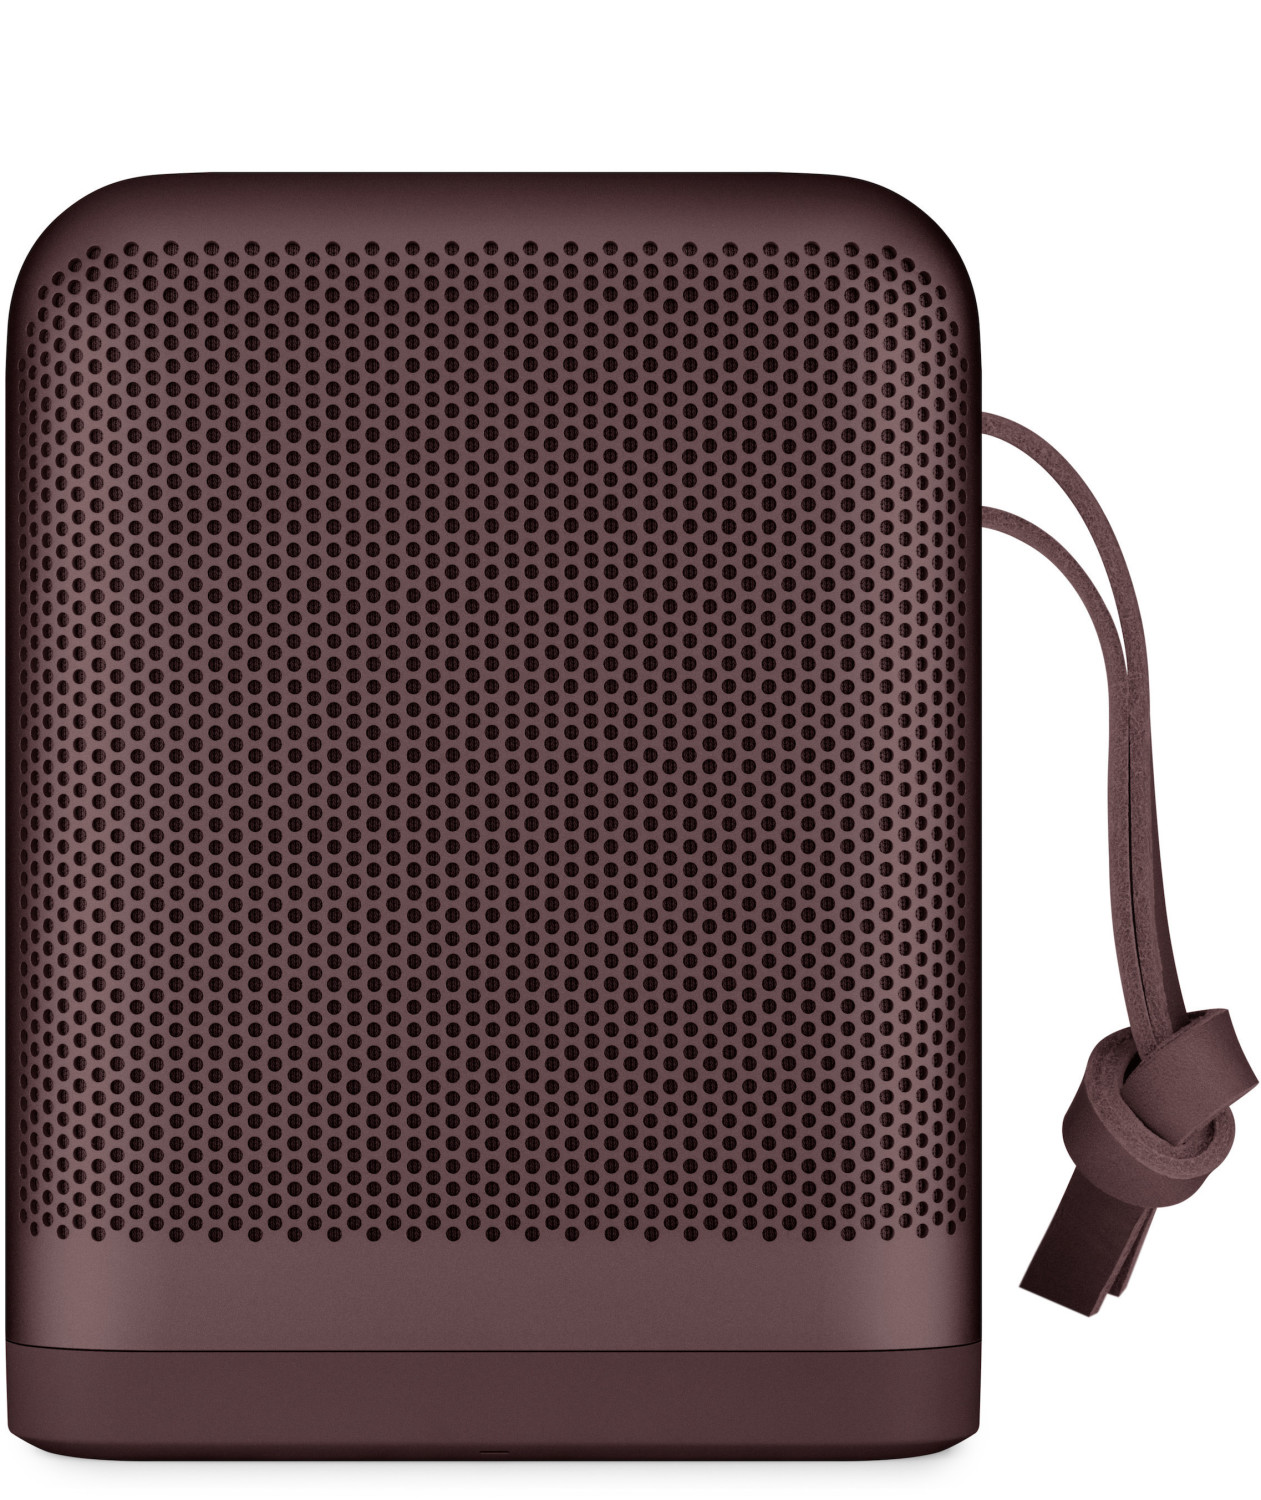 Bild zu Bluetooth Lautsprecher Bang & Olufsen Beoplay P6 für 205,90€ (Vergleich: 244,90€)